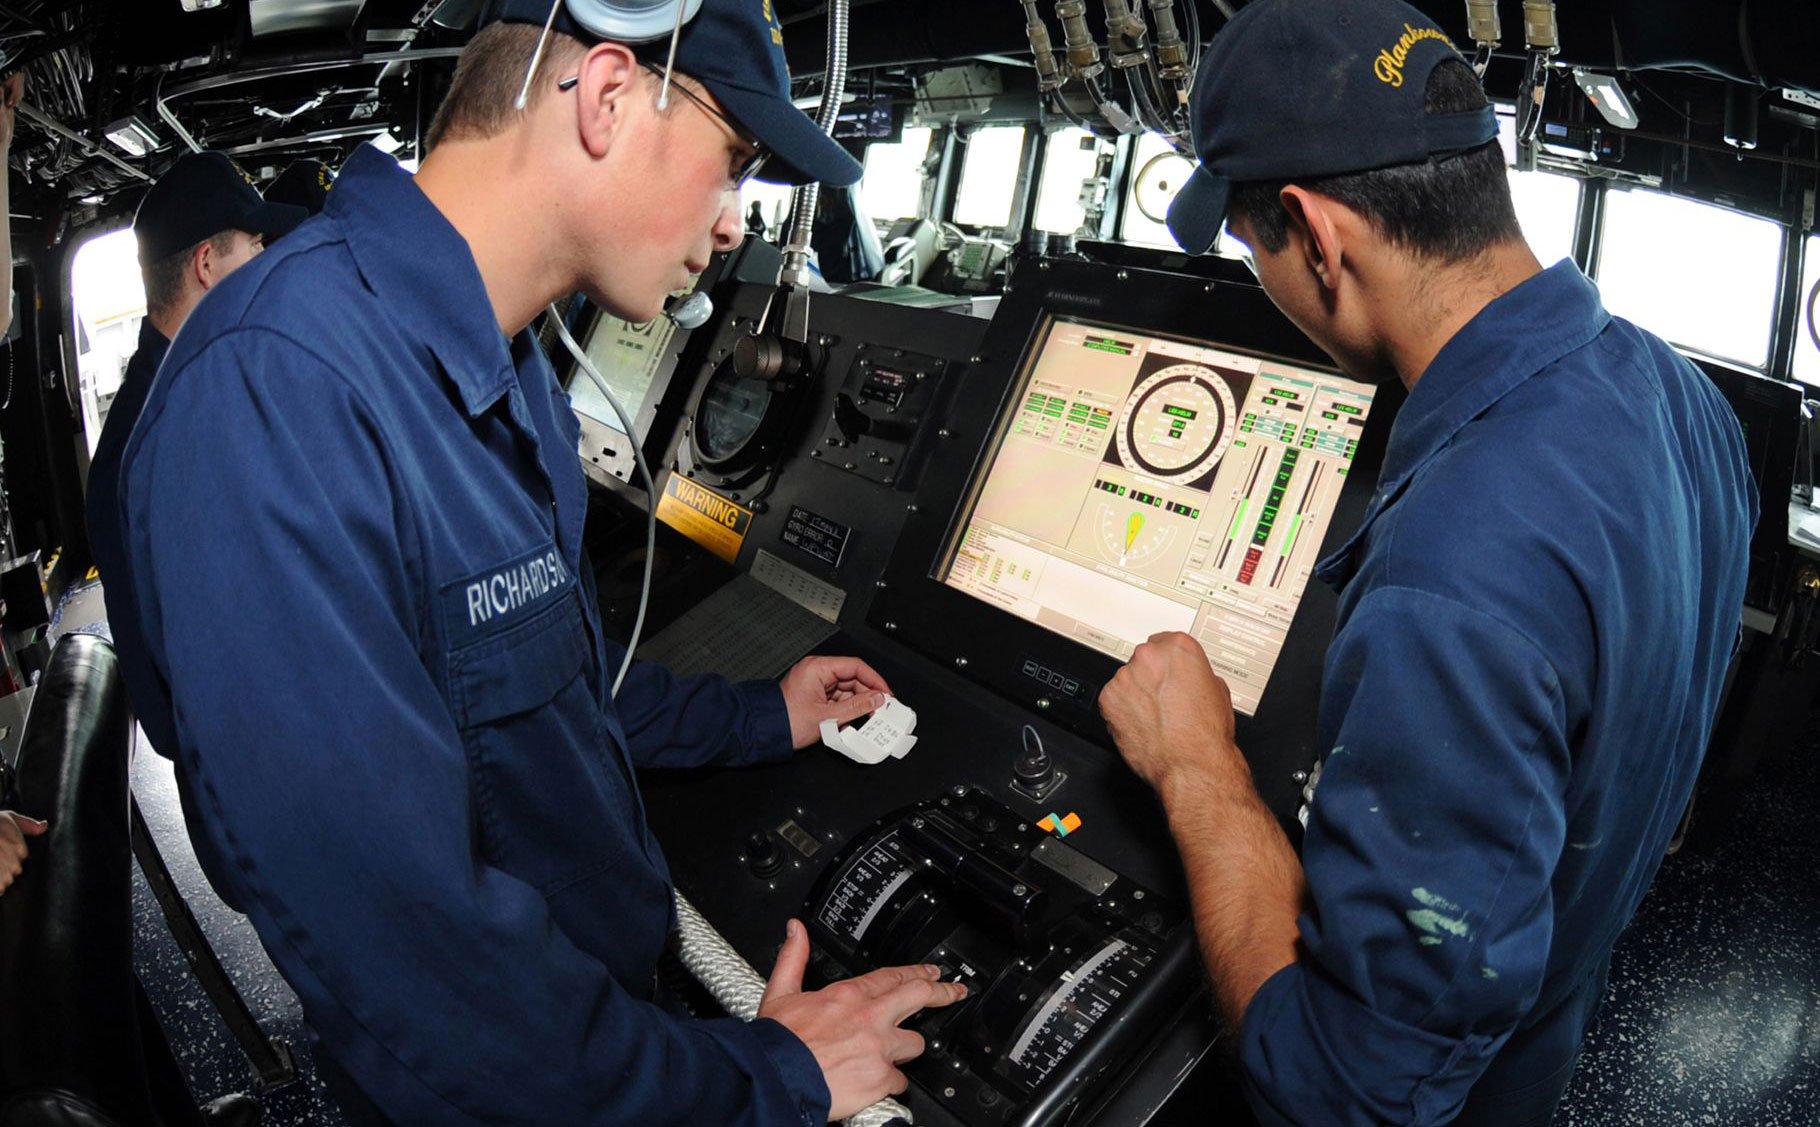 Hải quân Mỹ bỏ màn hình cảm ứng, quay về cơ khí để điều khiển tàu chiến